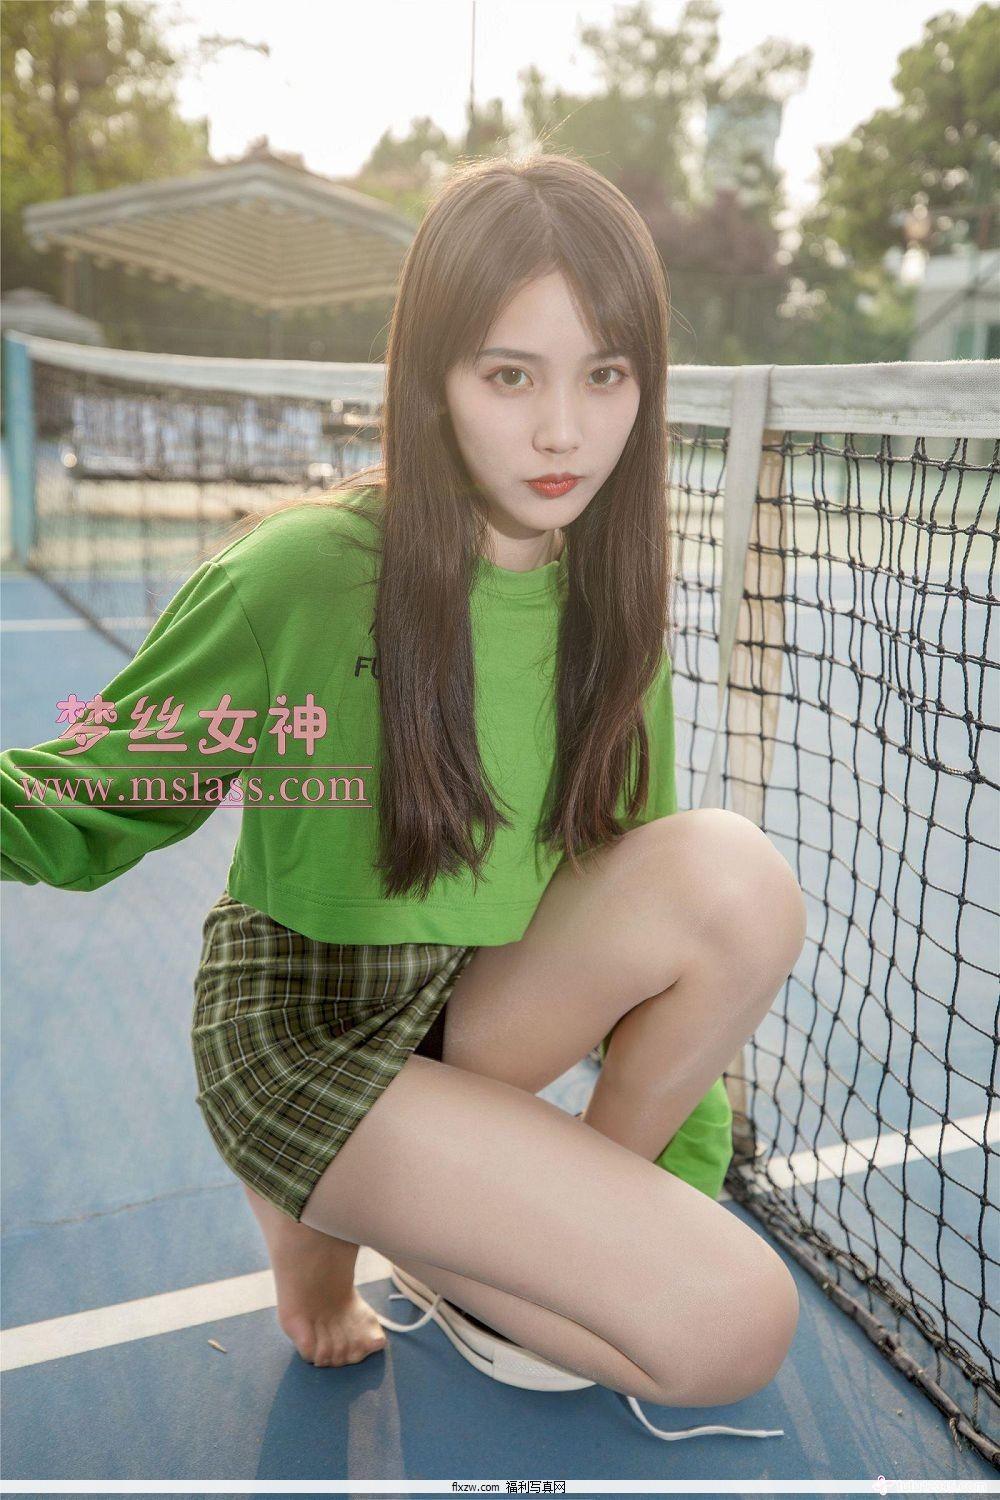 梦丝女神MSLASS - 香萱 网球少女(42)